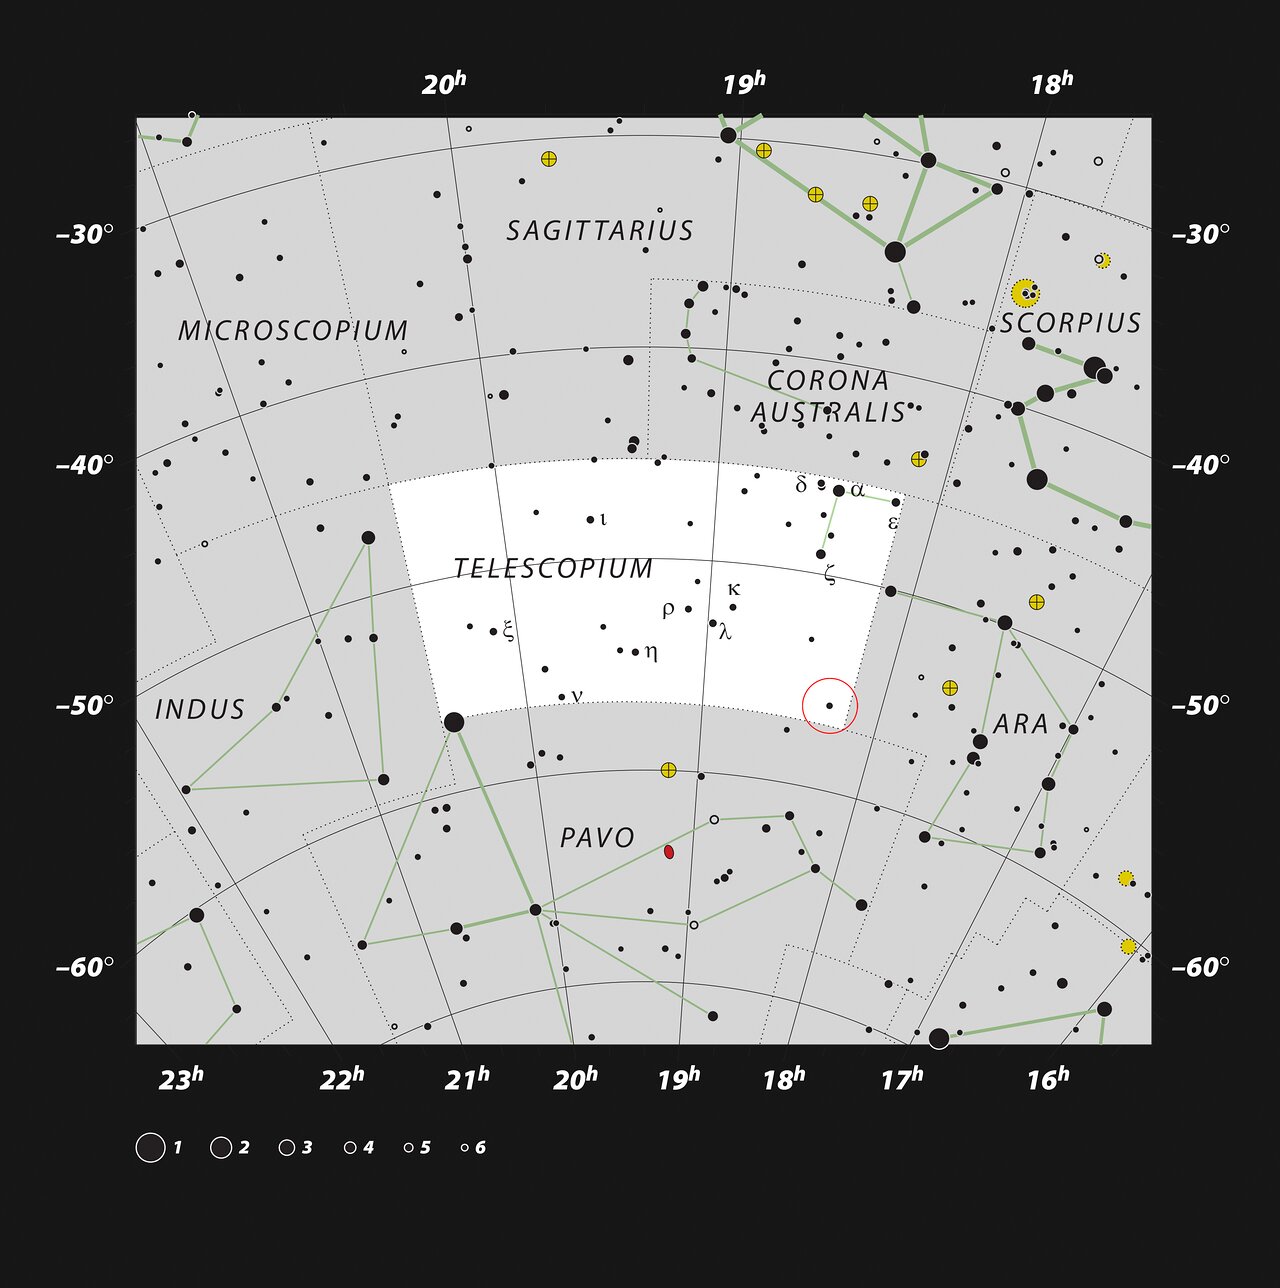 Červený kruh vyznačuje pozici systému s černou dírou v souhvězdí Dalekohledu. Kredit: ESO, IAU and Sky & Telescope